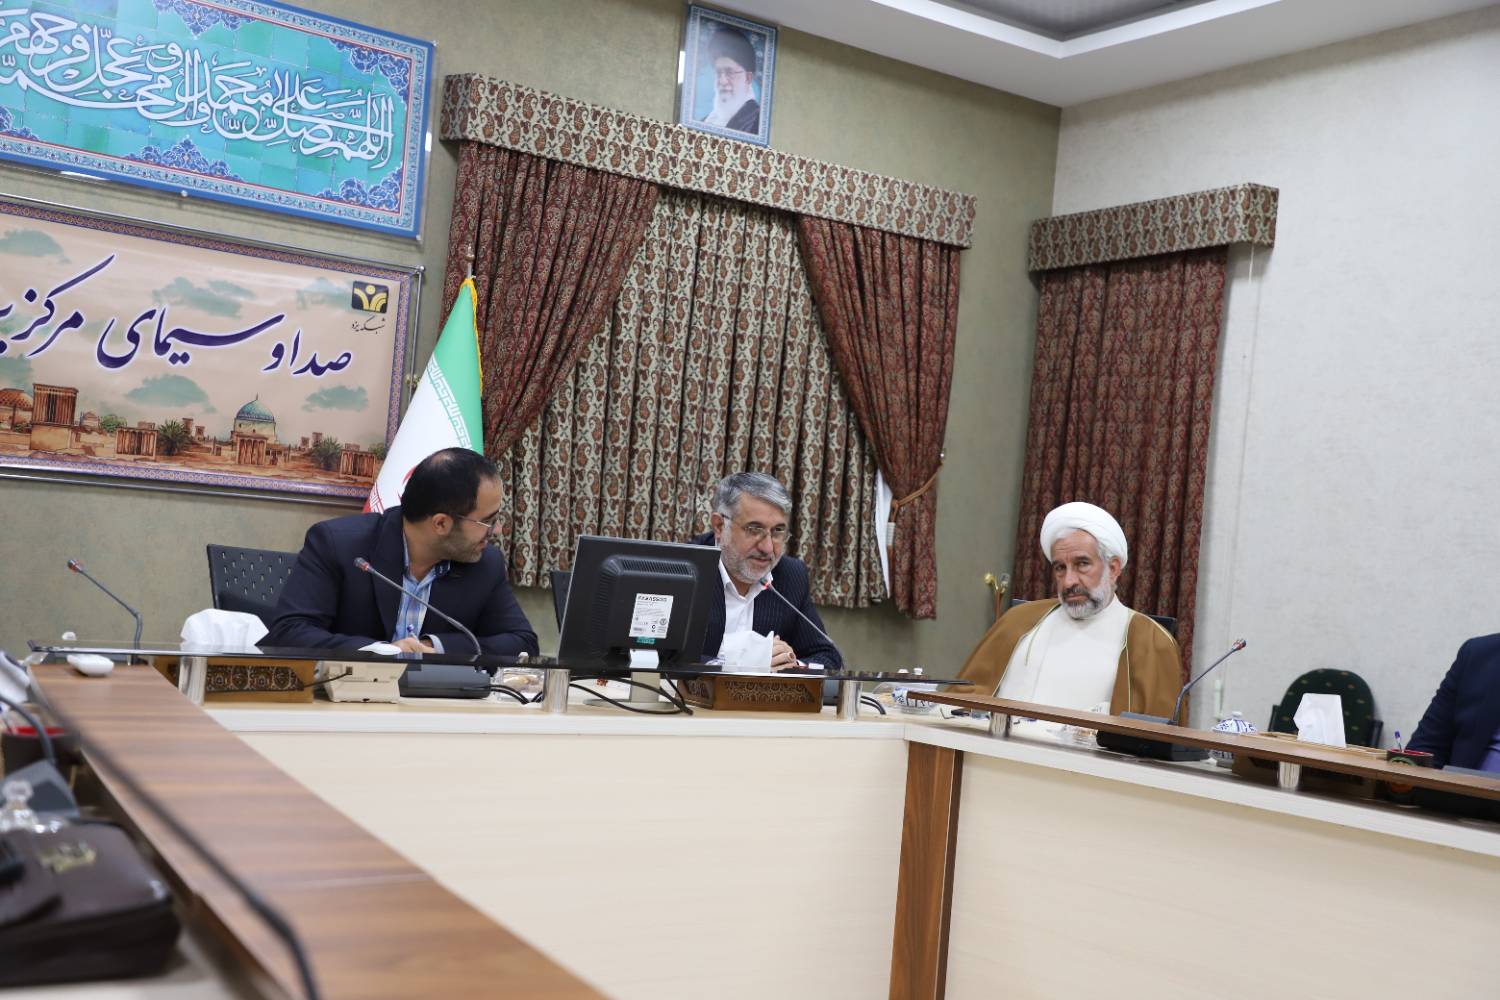 رئیس کل دادگستری استان یزد:تقویت هویت دینی و همبستگی ملی، رسالت مهم صدا و سیماست